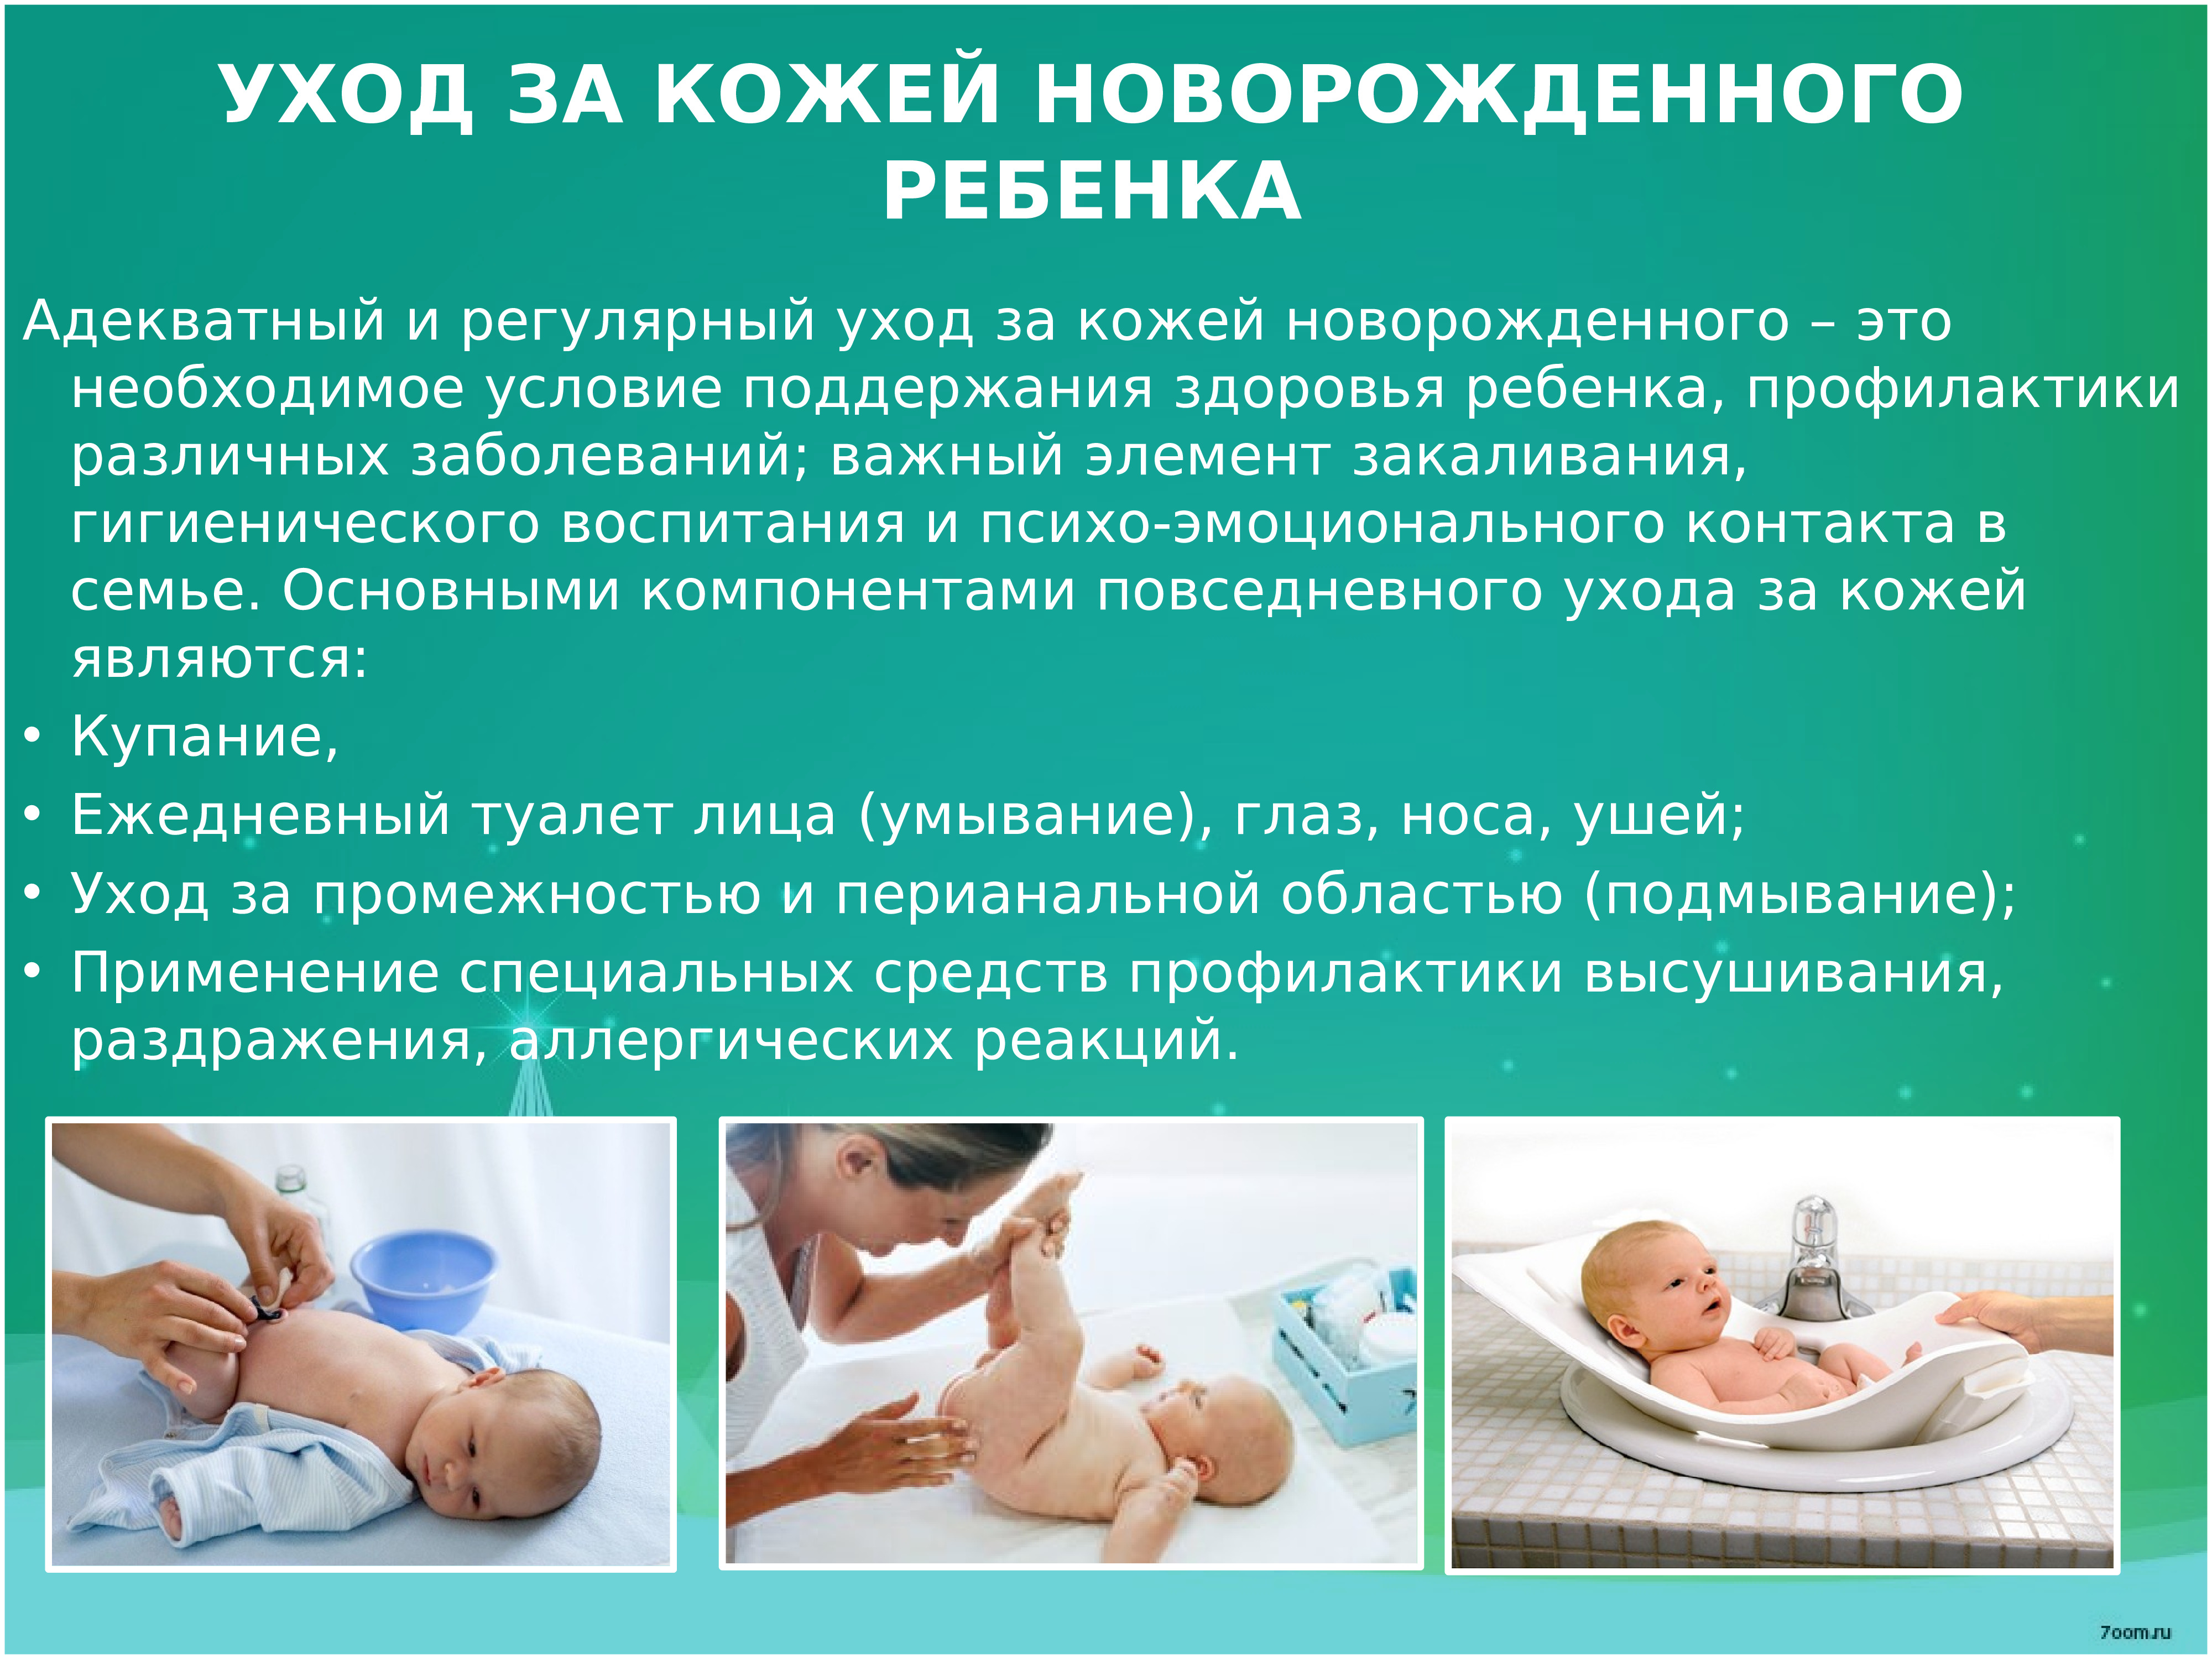 Проведение утреннего туалета новорожденному ребенку. Туалет кожи новорожденного алгоритм. Гигиенический туалет новорожденного. Утренний туалет грудничка. Утренний туалет новорожденного алгоритм.